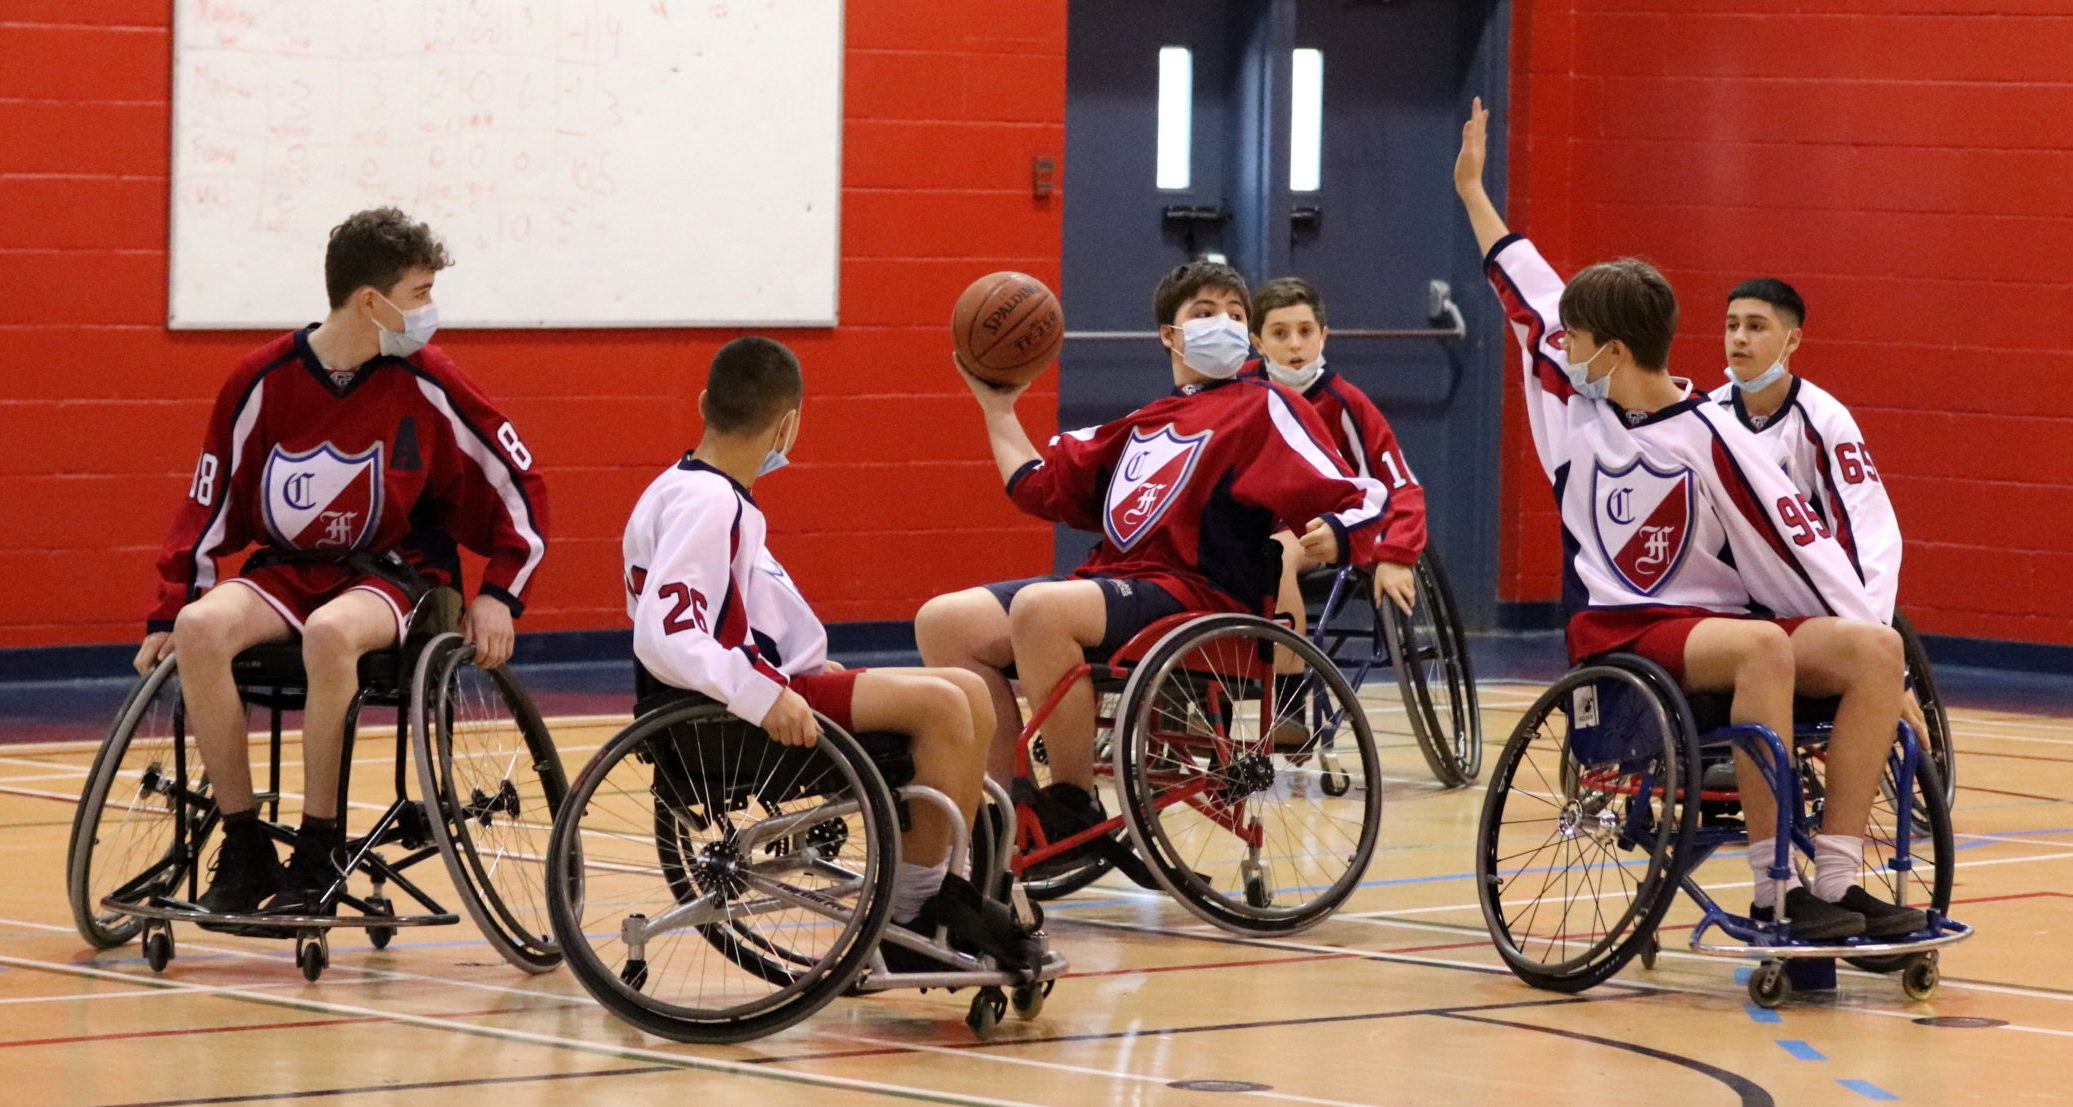 Les élèves du Collège Français jouent au basketball en fauteuil roulant lors de la levée de fonds au profit du Défi sportif AlterGo.